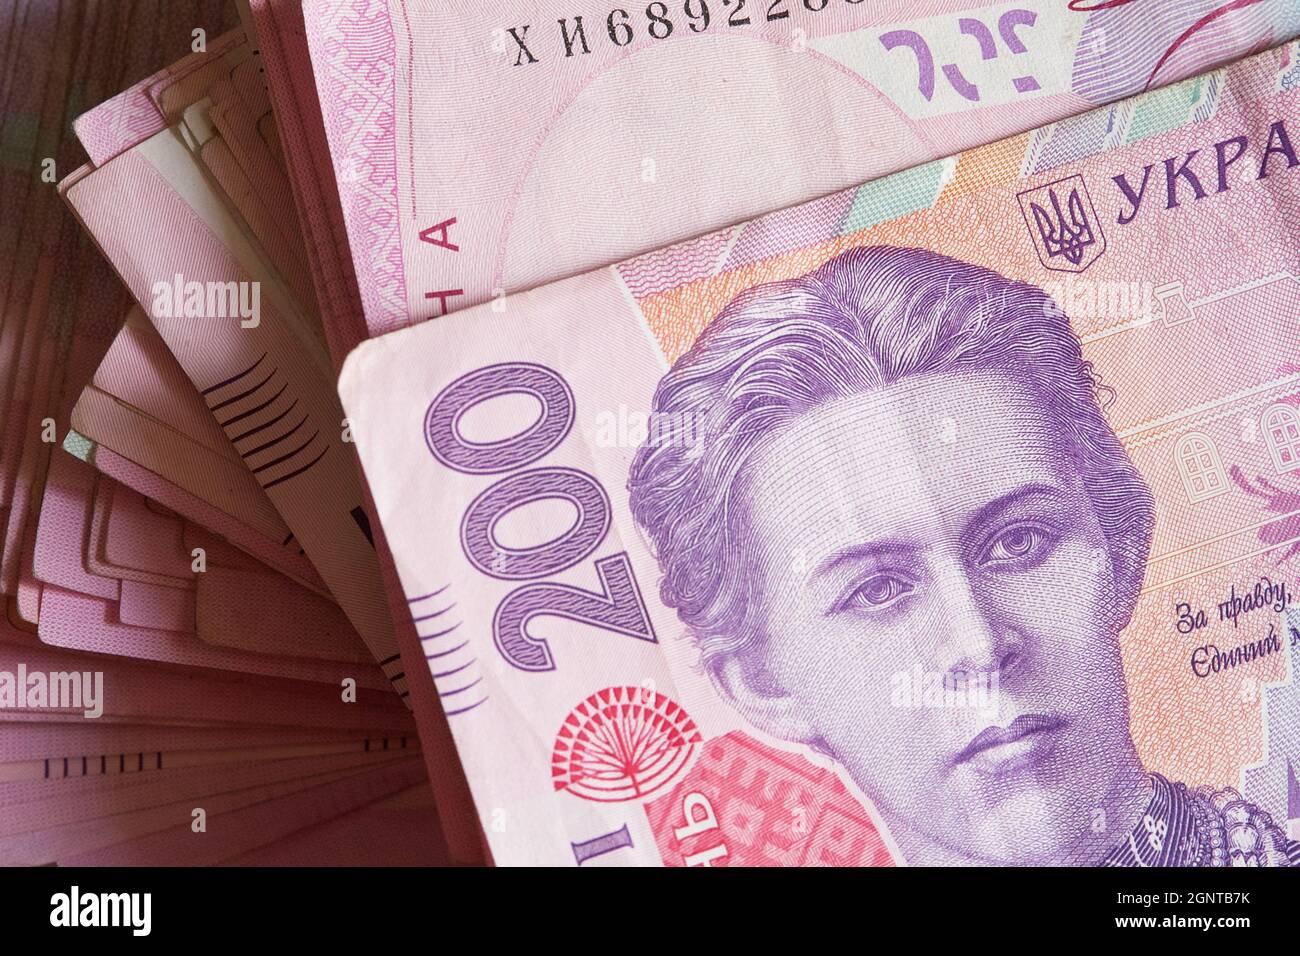 Un mazzo di banconote con un valore facciale di duecento hryvnias. Denaro ucraino. Foto Stock